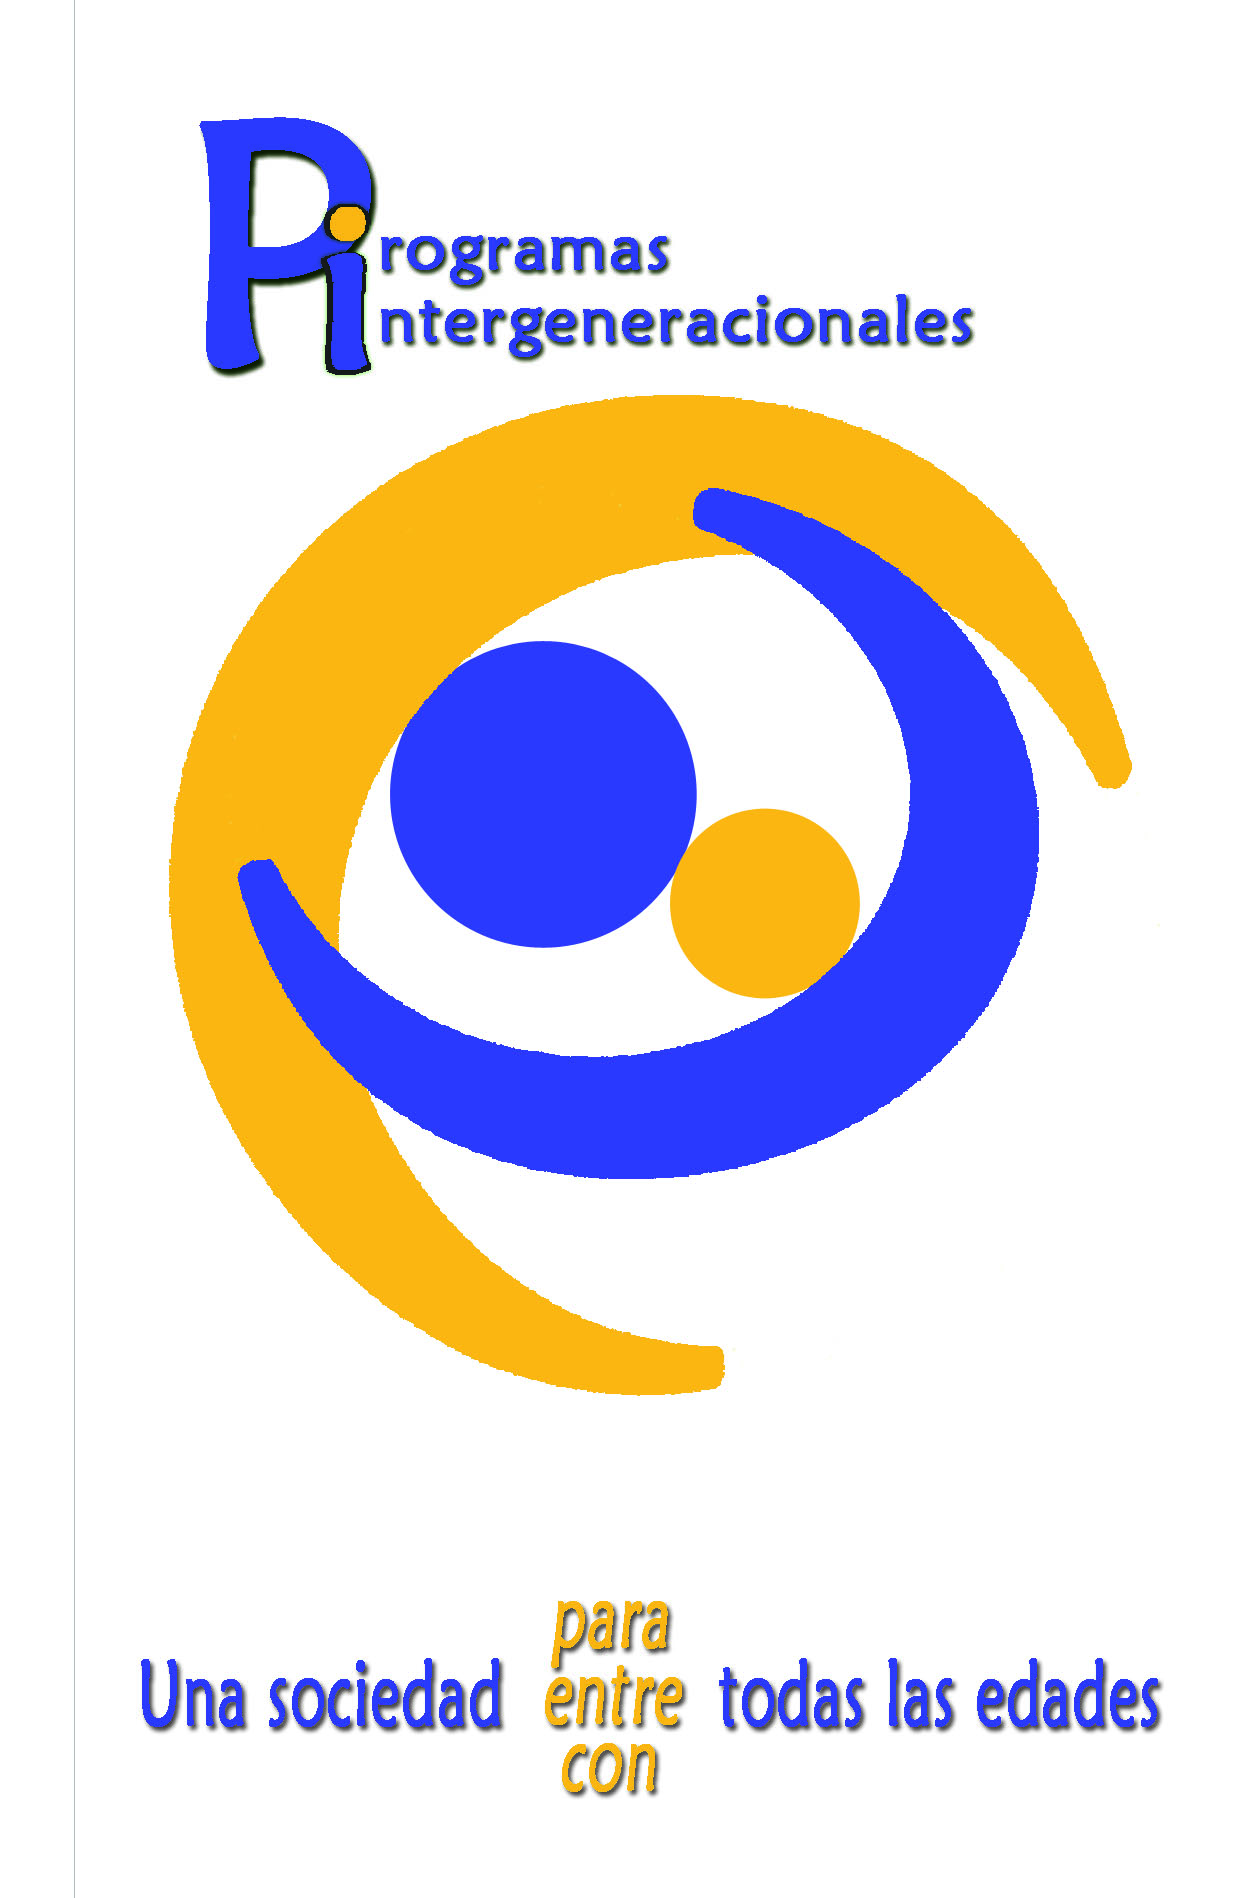 Logo programas intergeneracionales